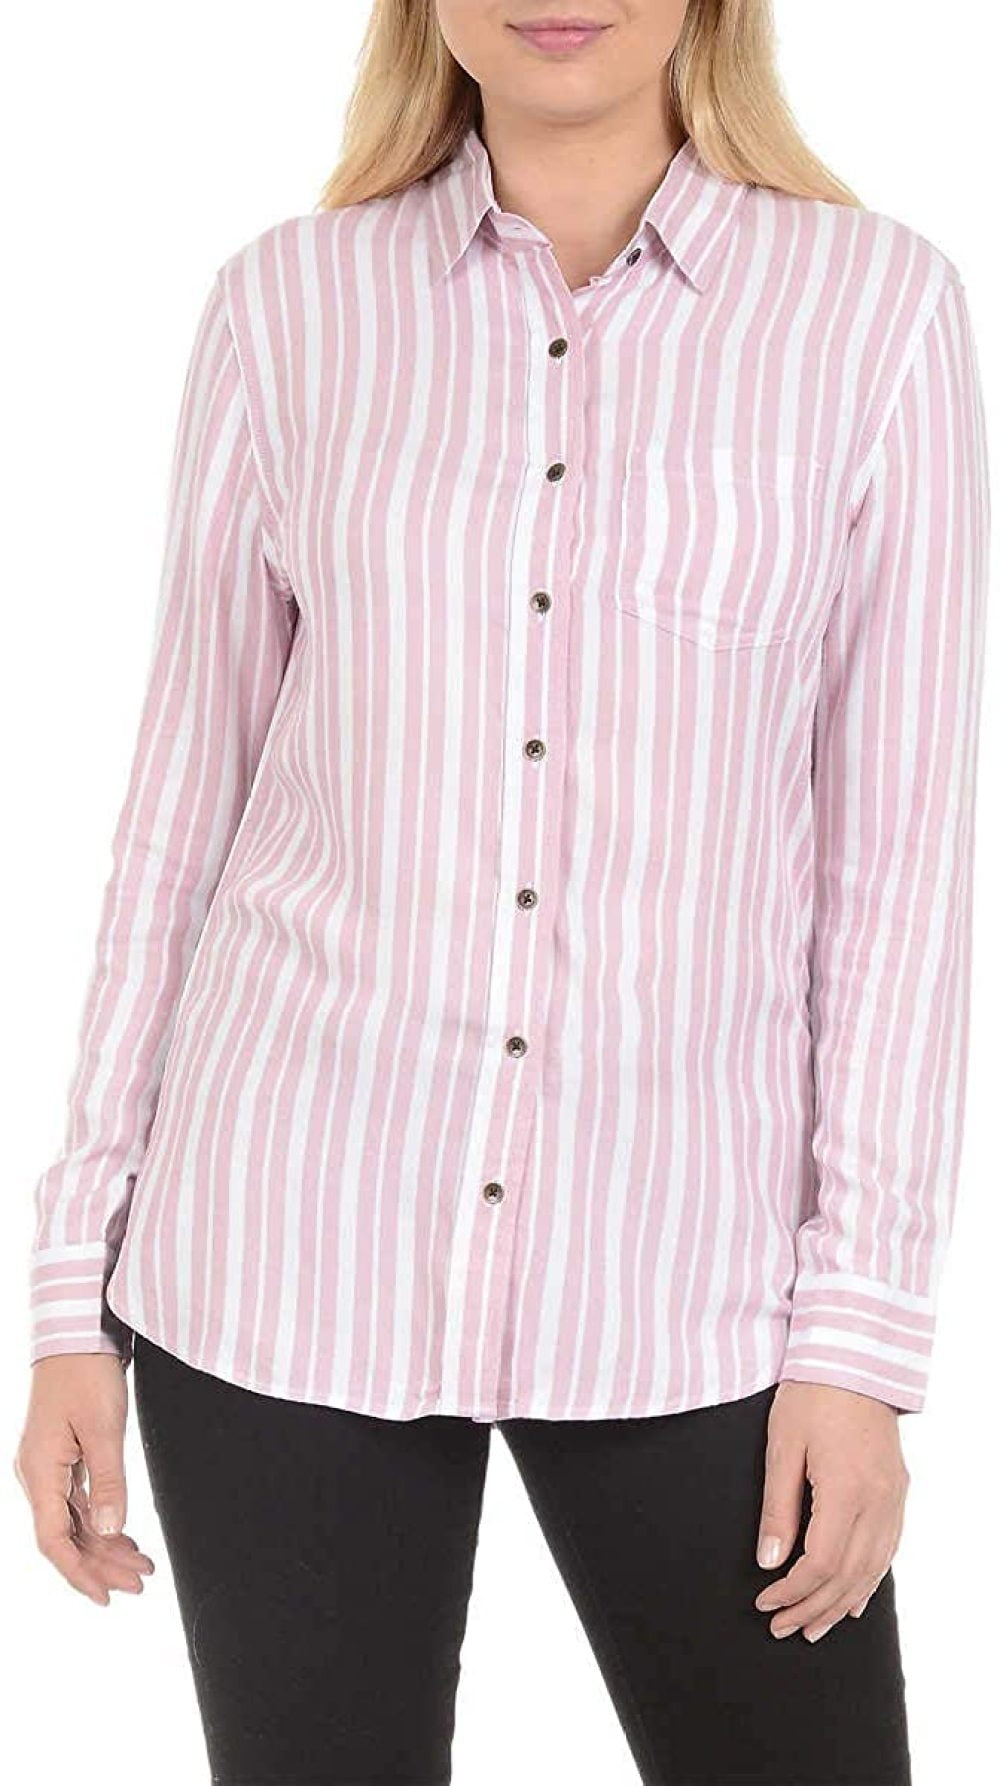 Jachs Girlfriend Women's Button Down Sleeveless Spring/Summer Shirt/Top 